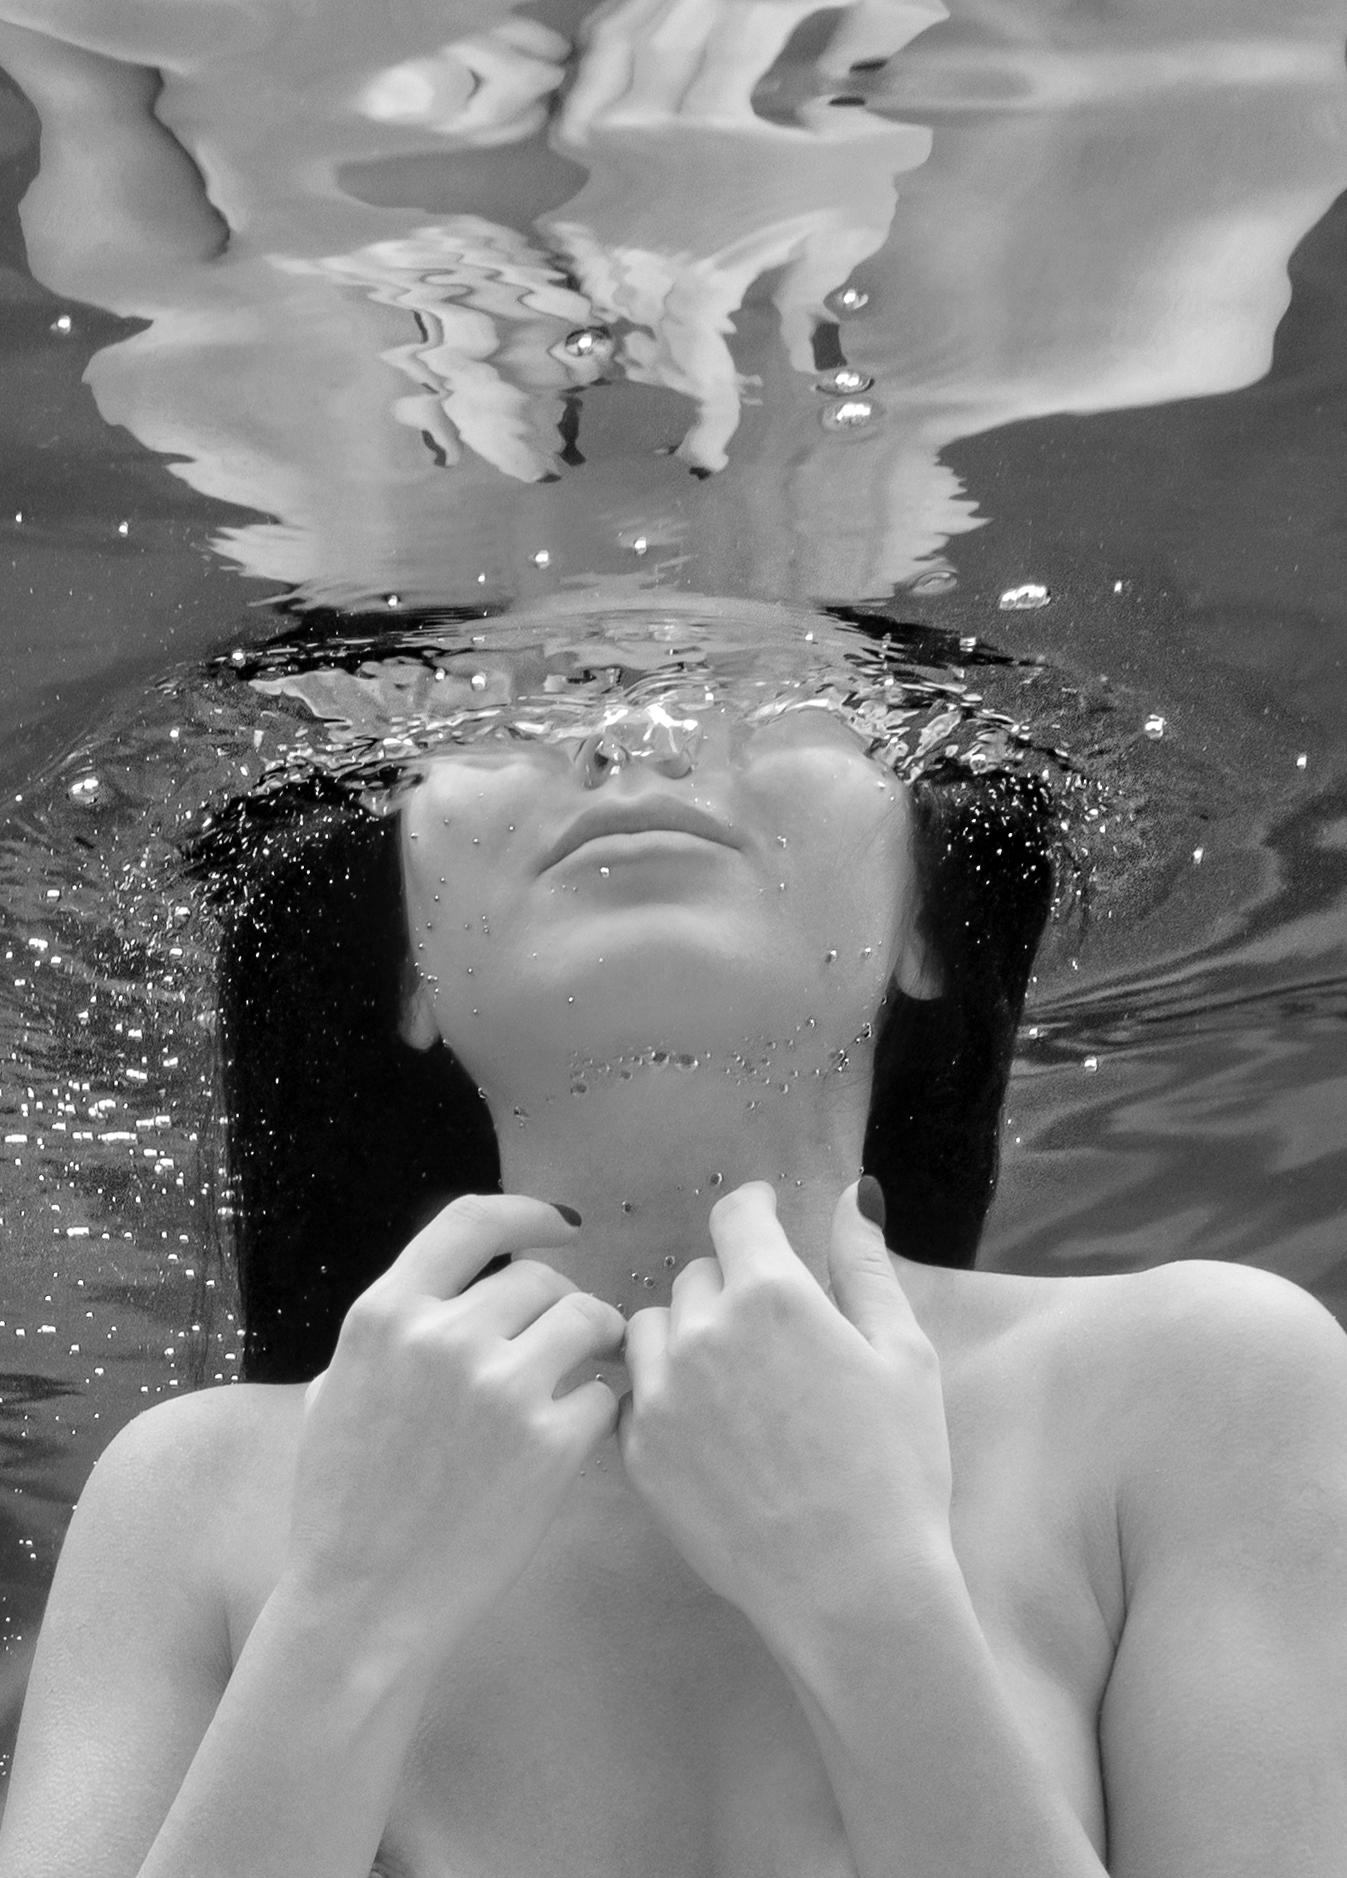 Alex Sher Black and White Photograph – Praying Mermaid - underwater nude photograph - archivtauglicher Pigmentdruck 35" x 25"